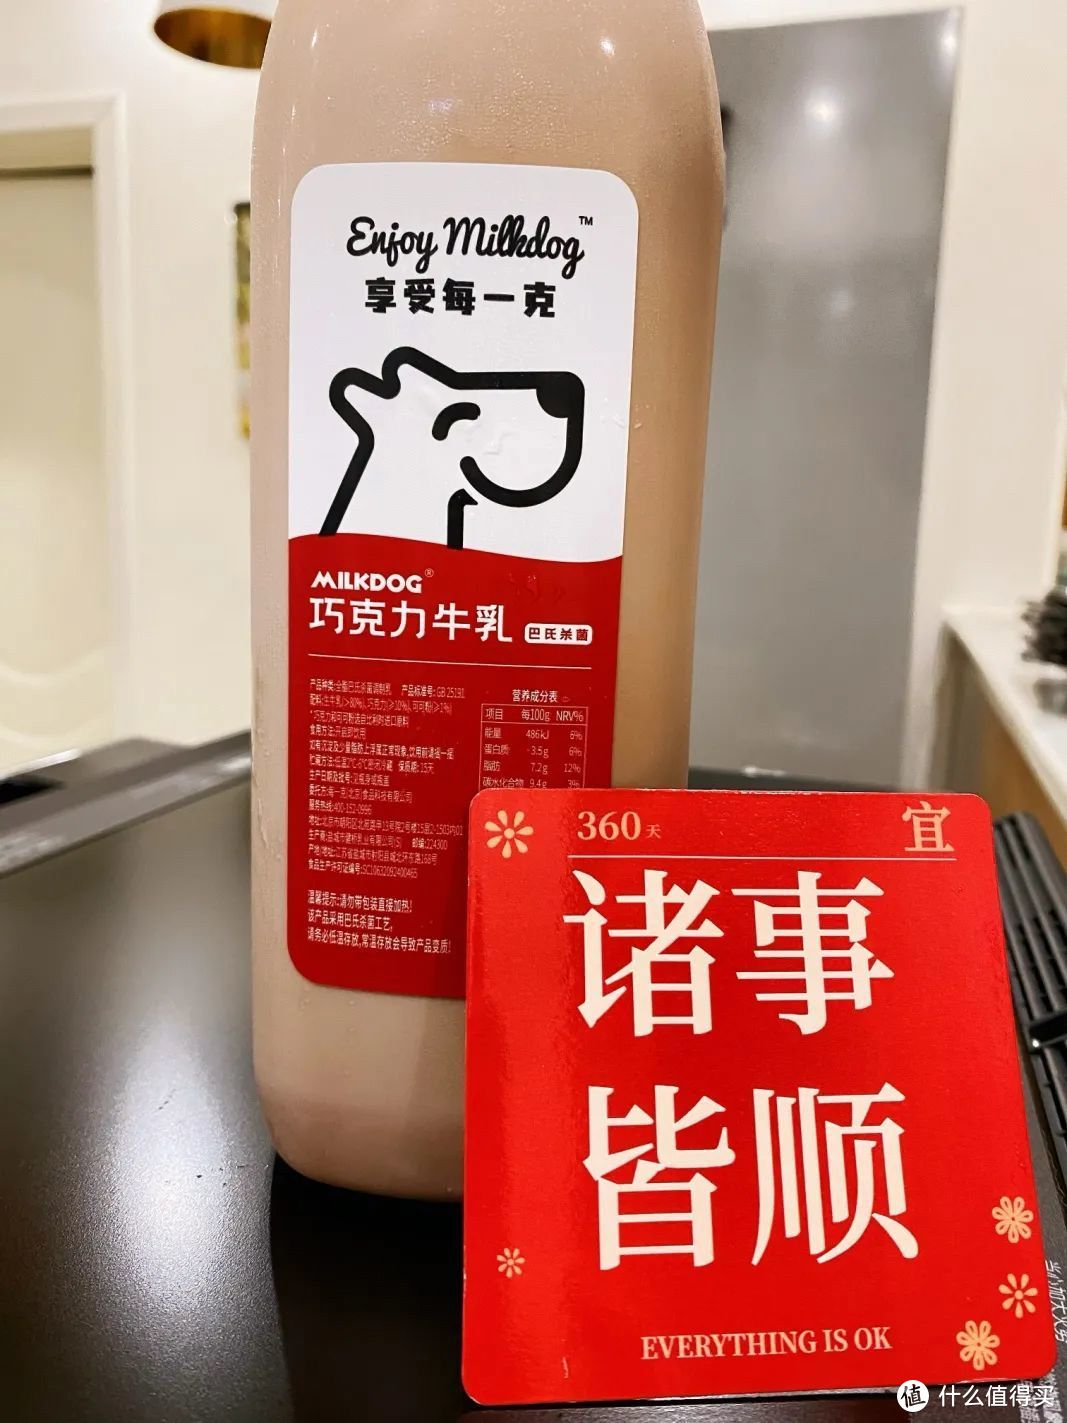 「新」试用 | 新品牌体验之「Milkdog每一克」巴氏杀菌巧克力鲜牛乳